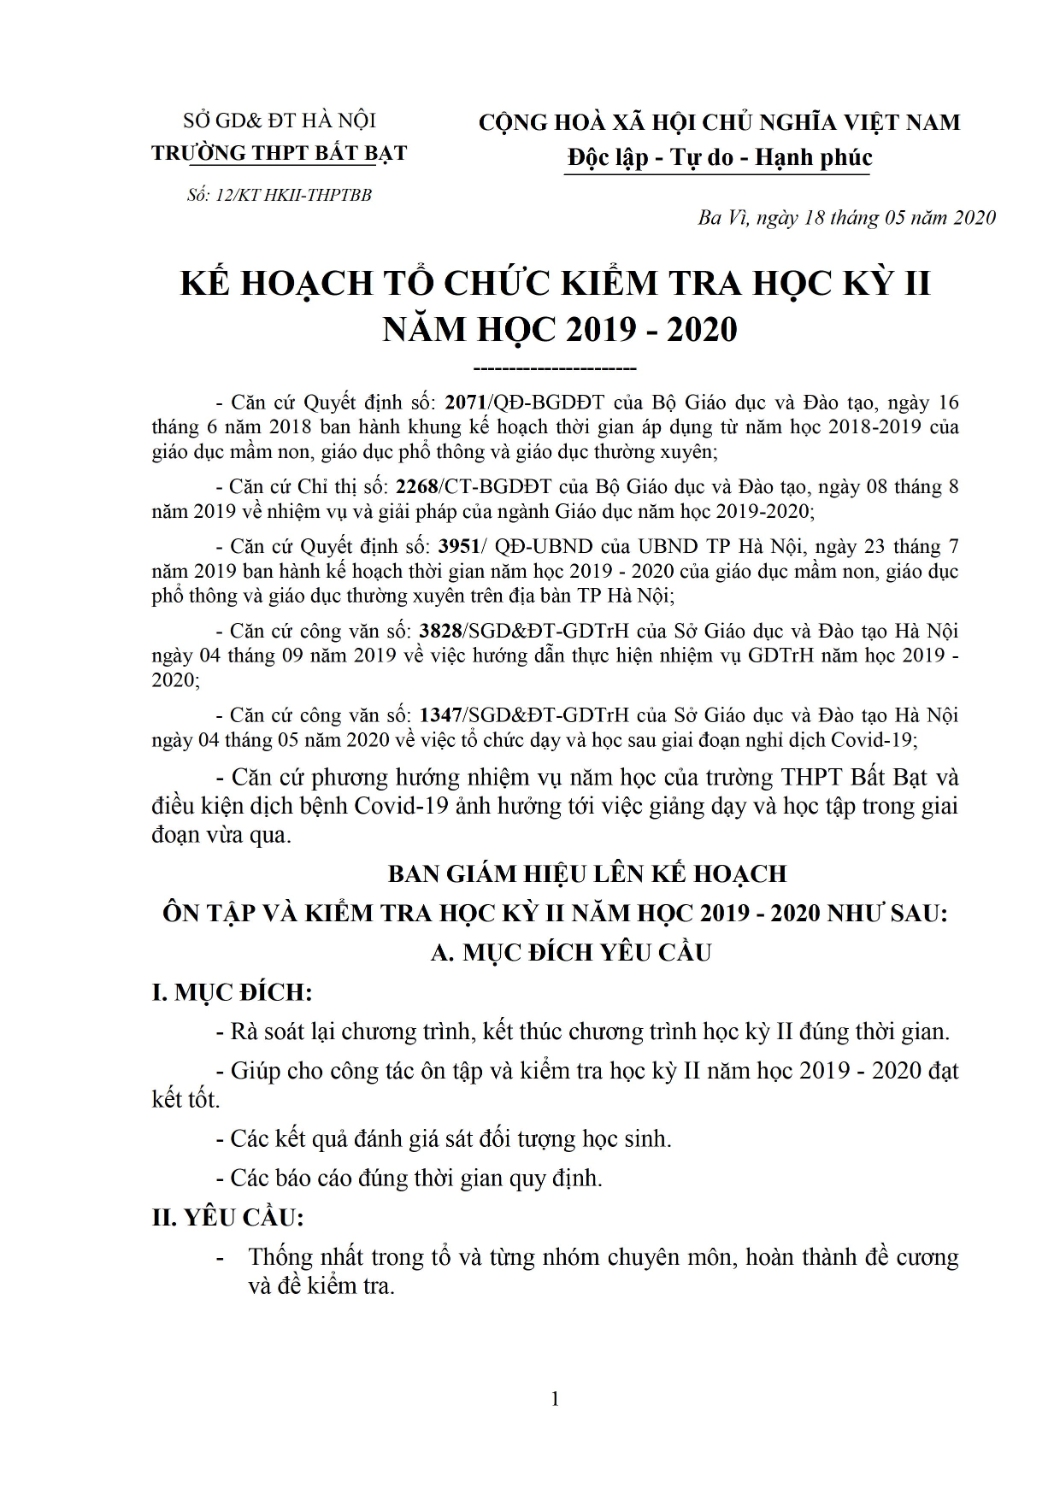 1 Ke hoach to chuc KT hoc ky II 2019 2020 0001